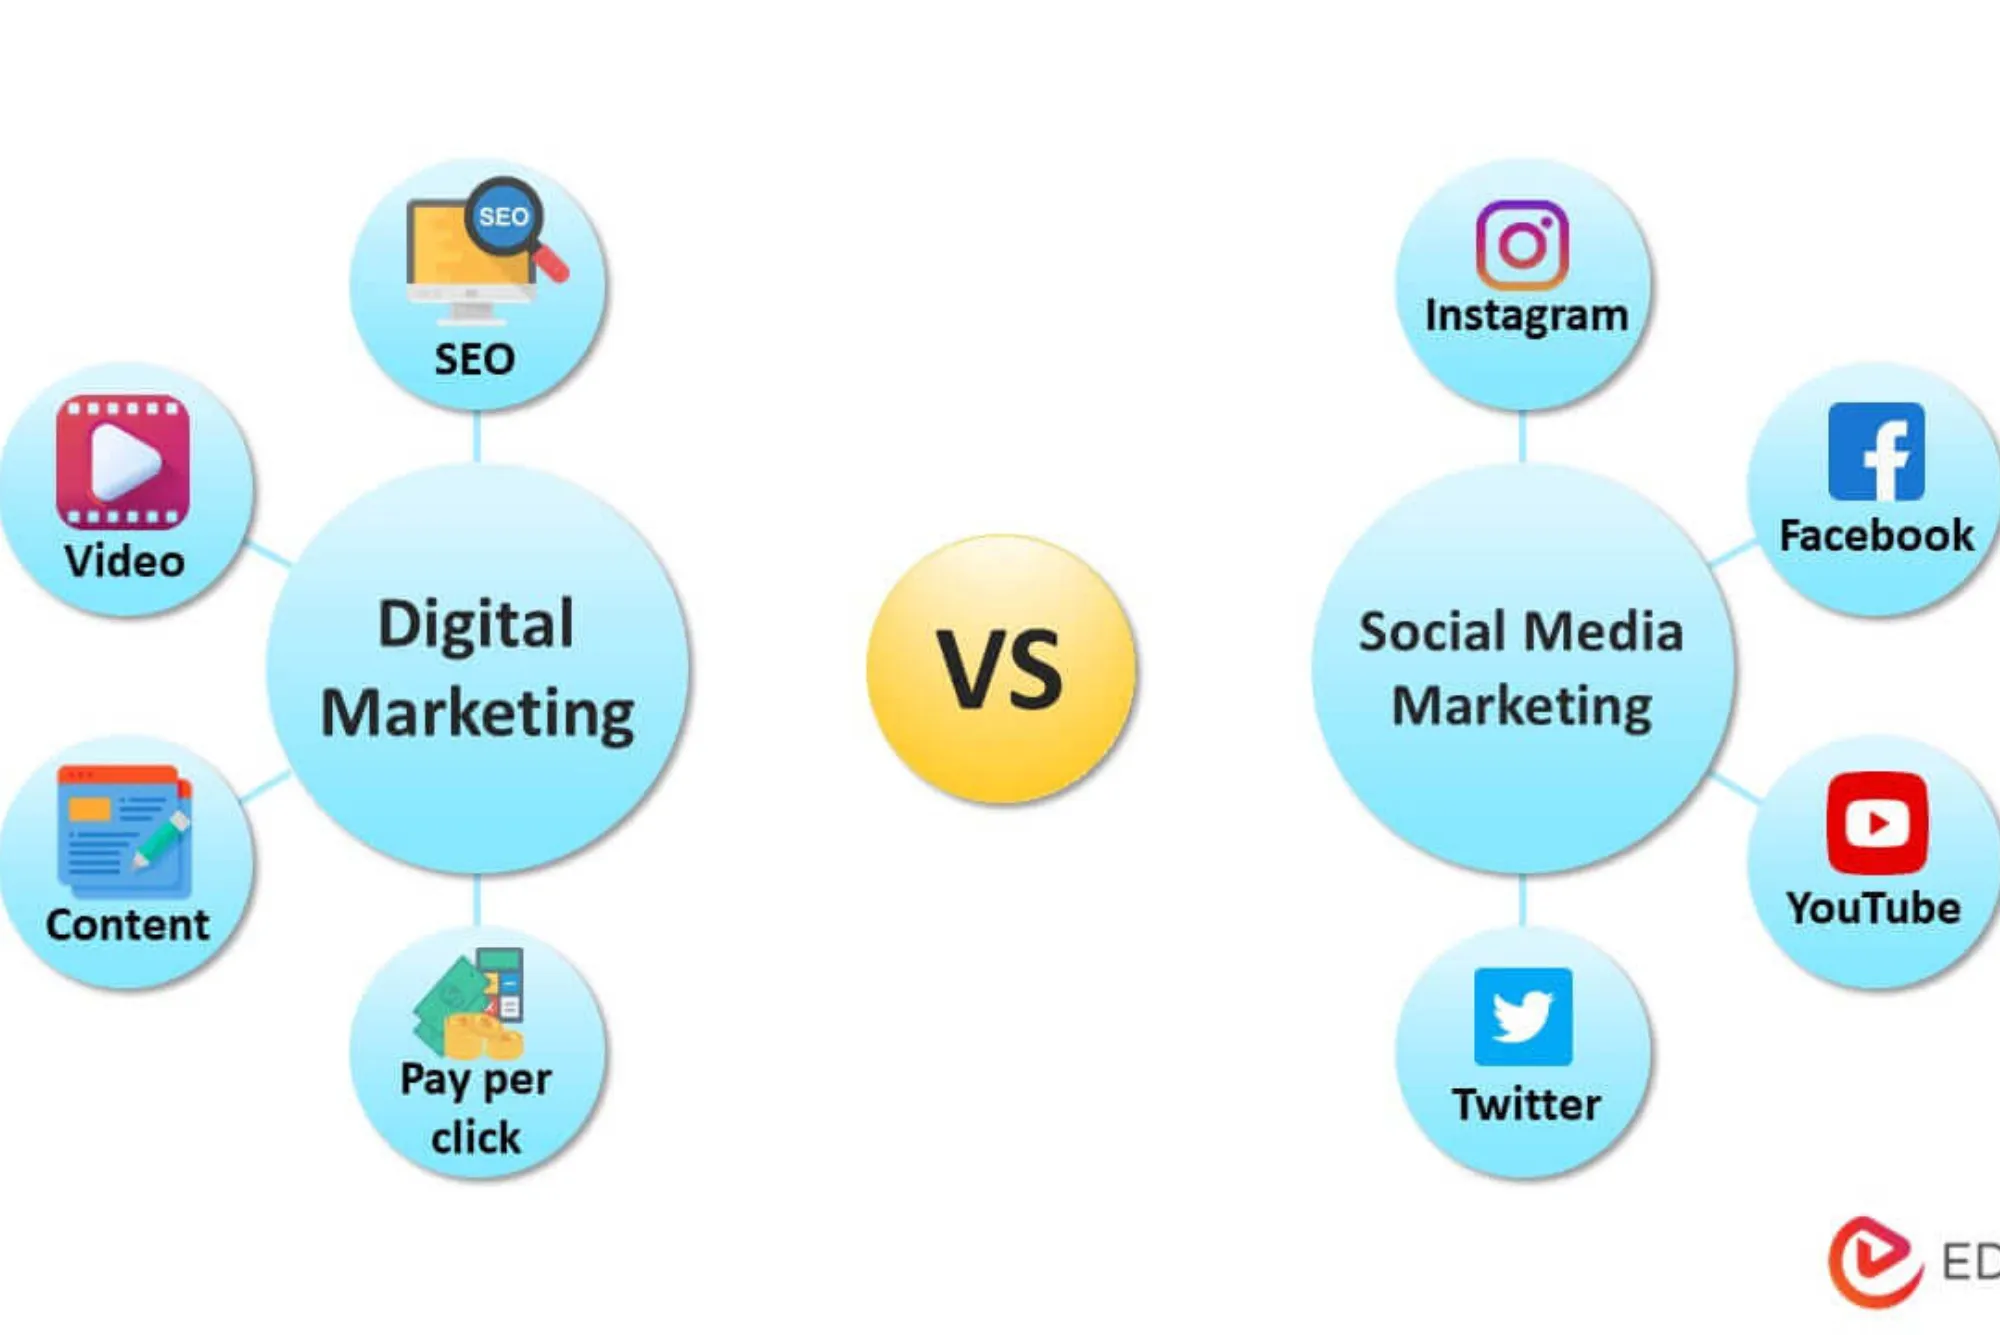 social media and digital marketing